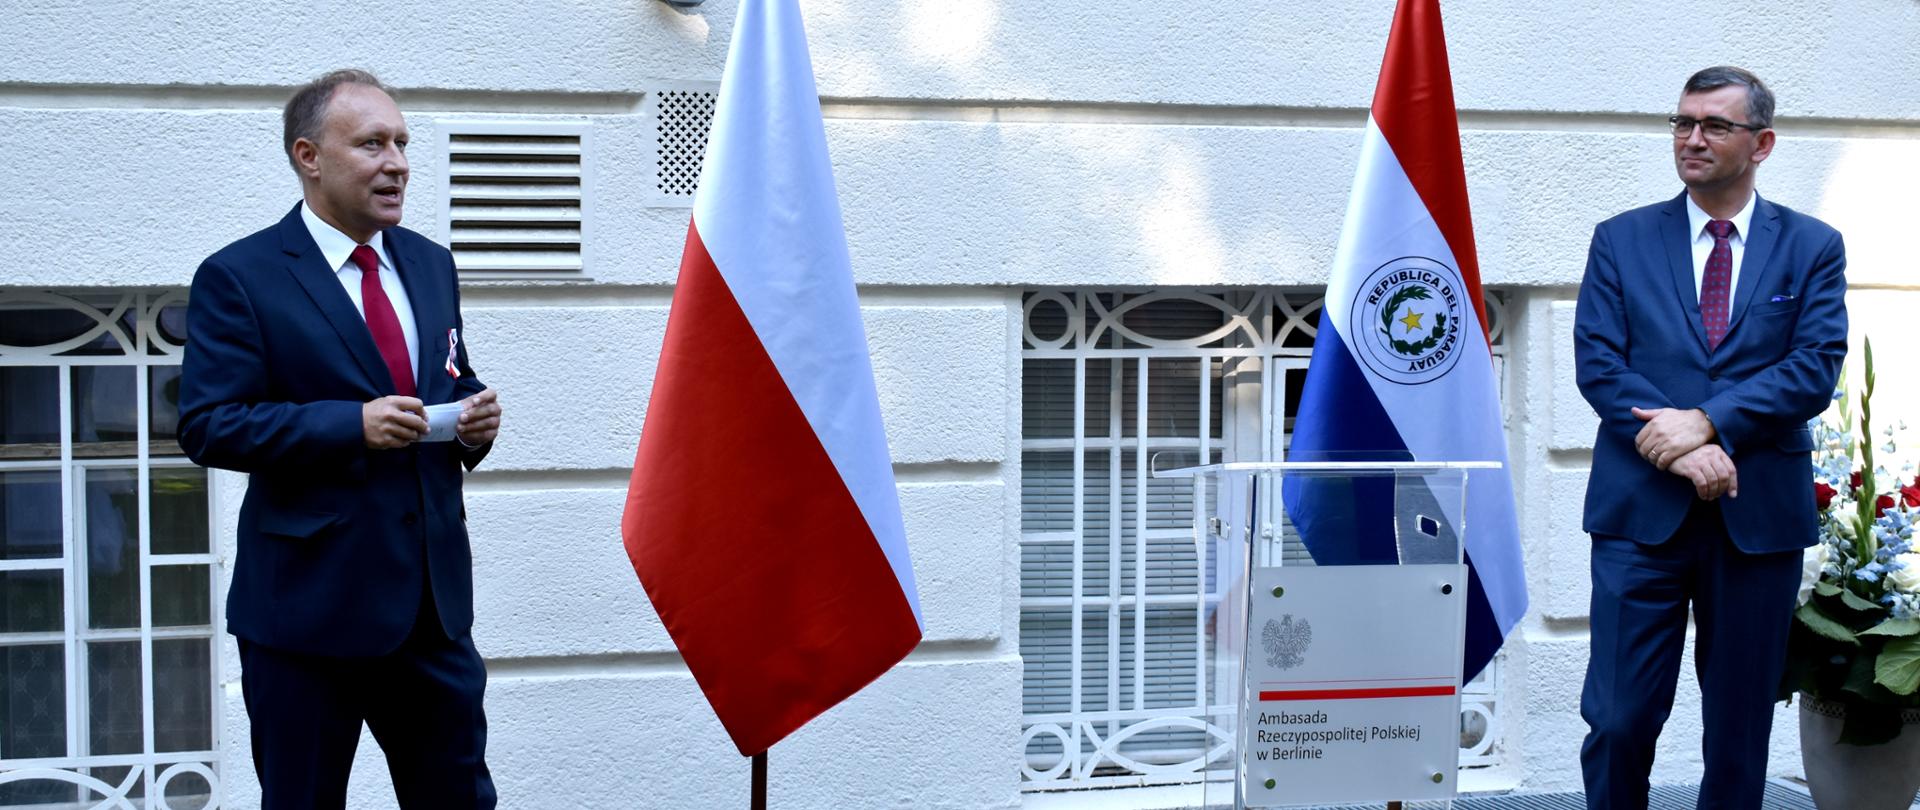 100-lecie stosunków dyplomatycznych Polska-Paragwaj. Amb RP w Berlinie_1